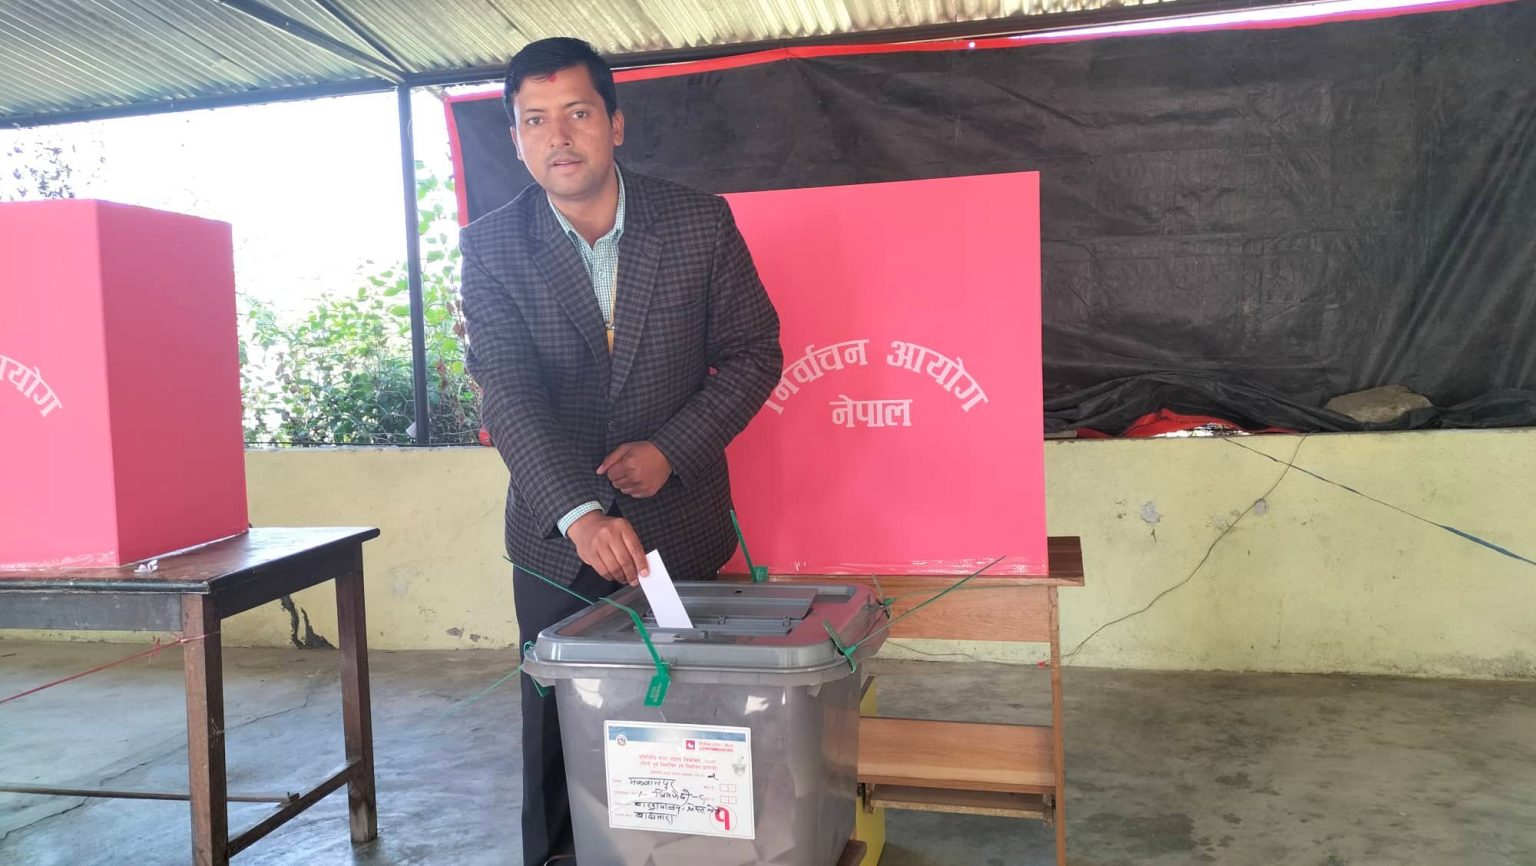 मकवानपुरको भीमफेदी बागमारा बाख्रा फार्म मतदान केन्द्रबाट महेश बर्तौलाले गरे मतदान